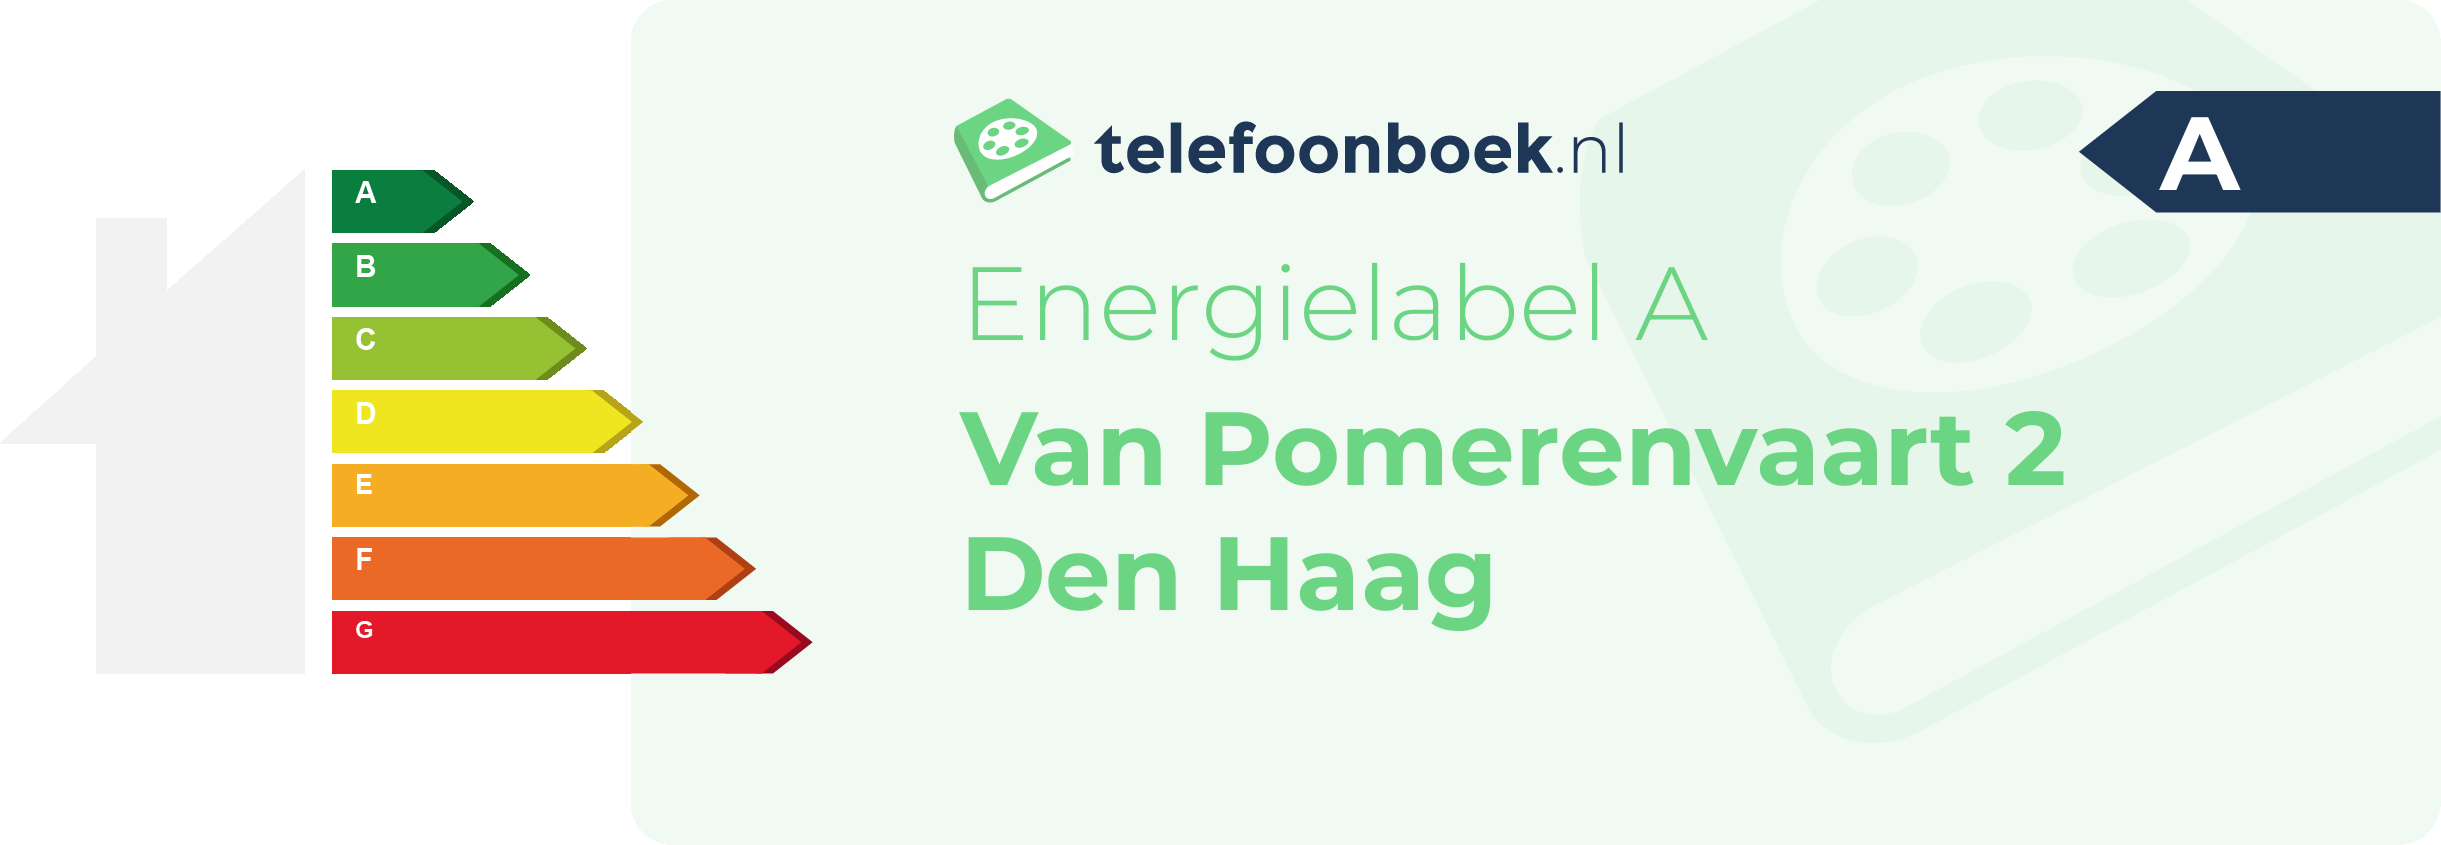 Energielabel Van Pomerenvaart 2 Den Haag